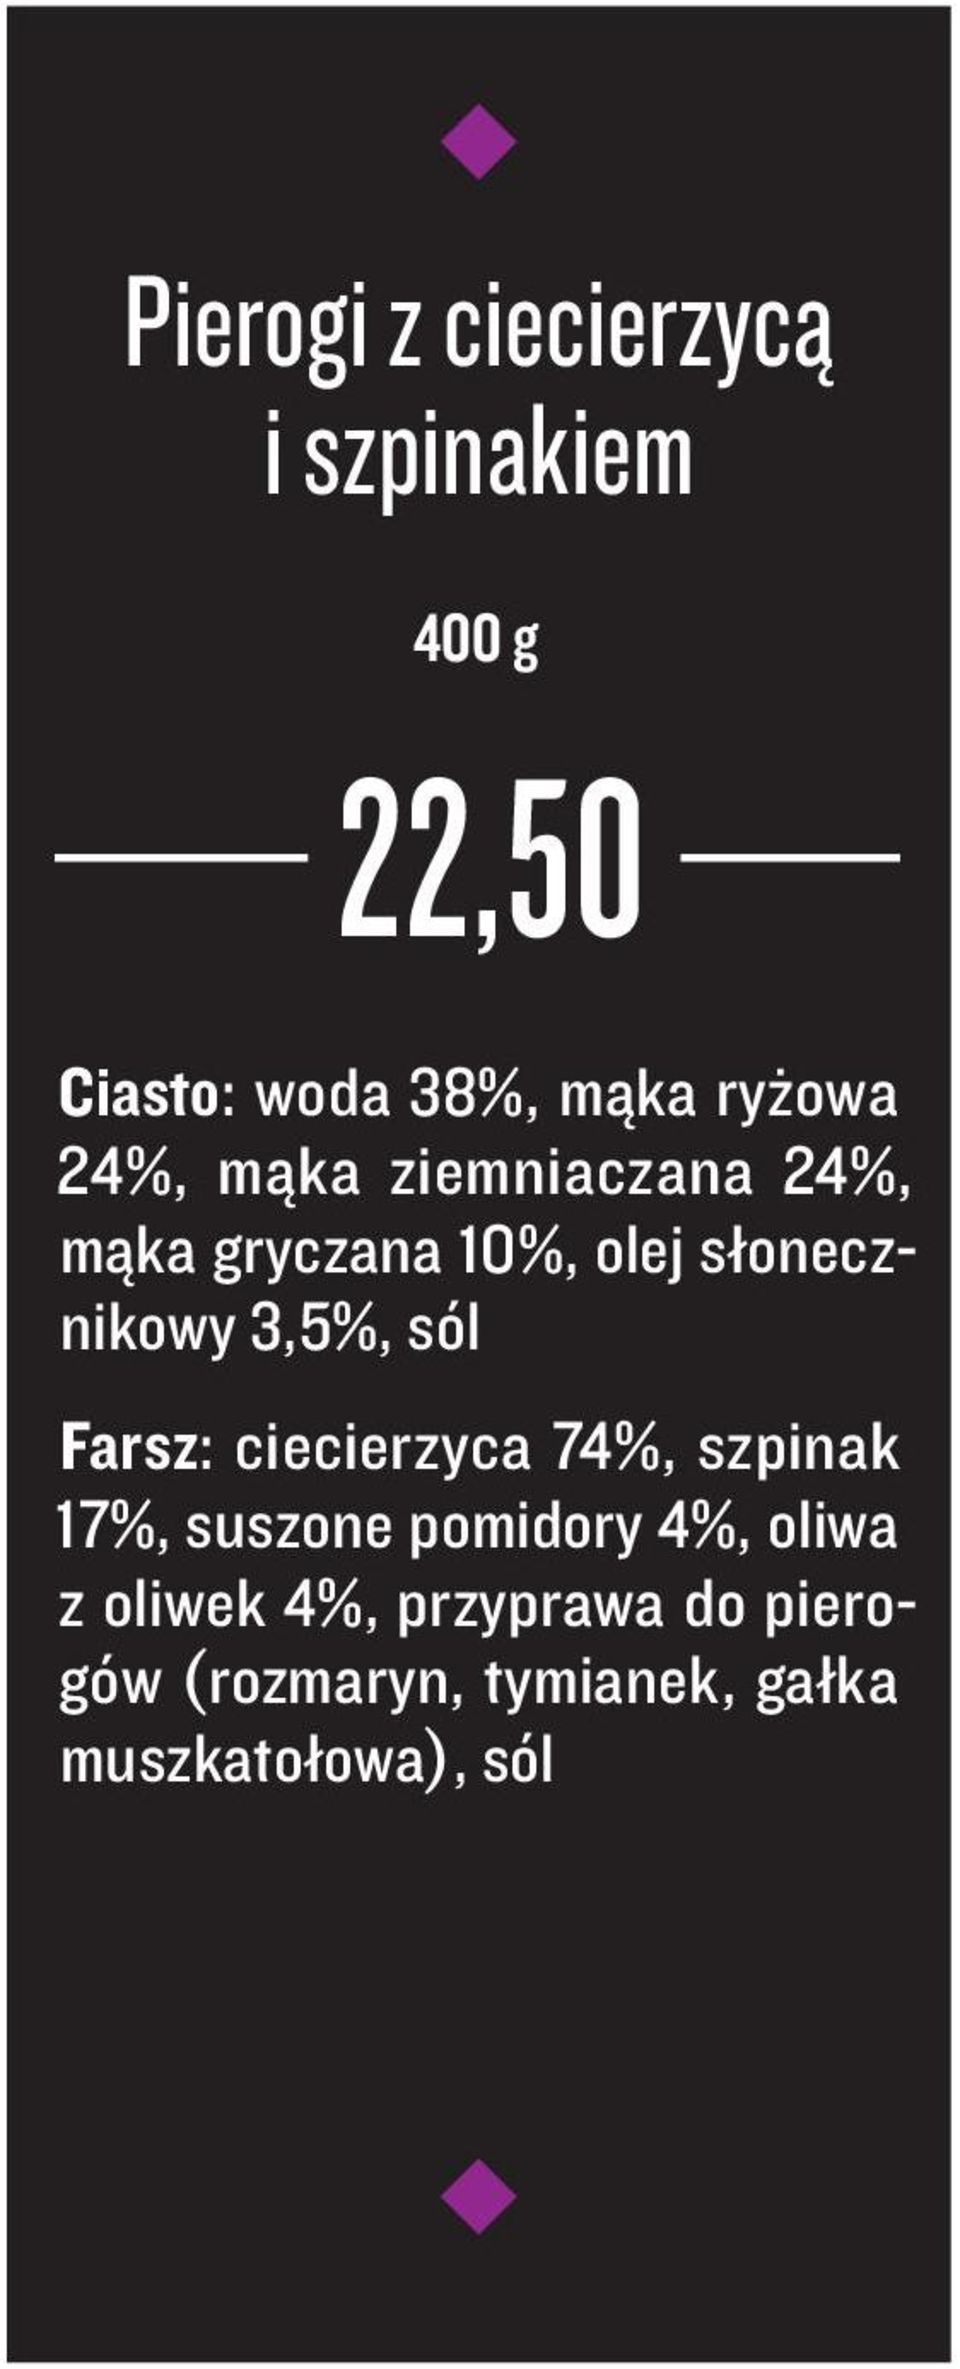 3,5%, sól Farsz: ciecierzyca 74%, szpinak 17%, suszone pomidory 4%, oliwa